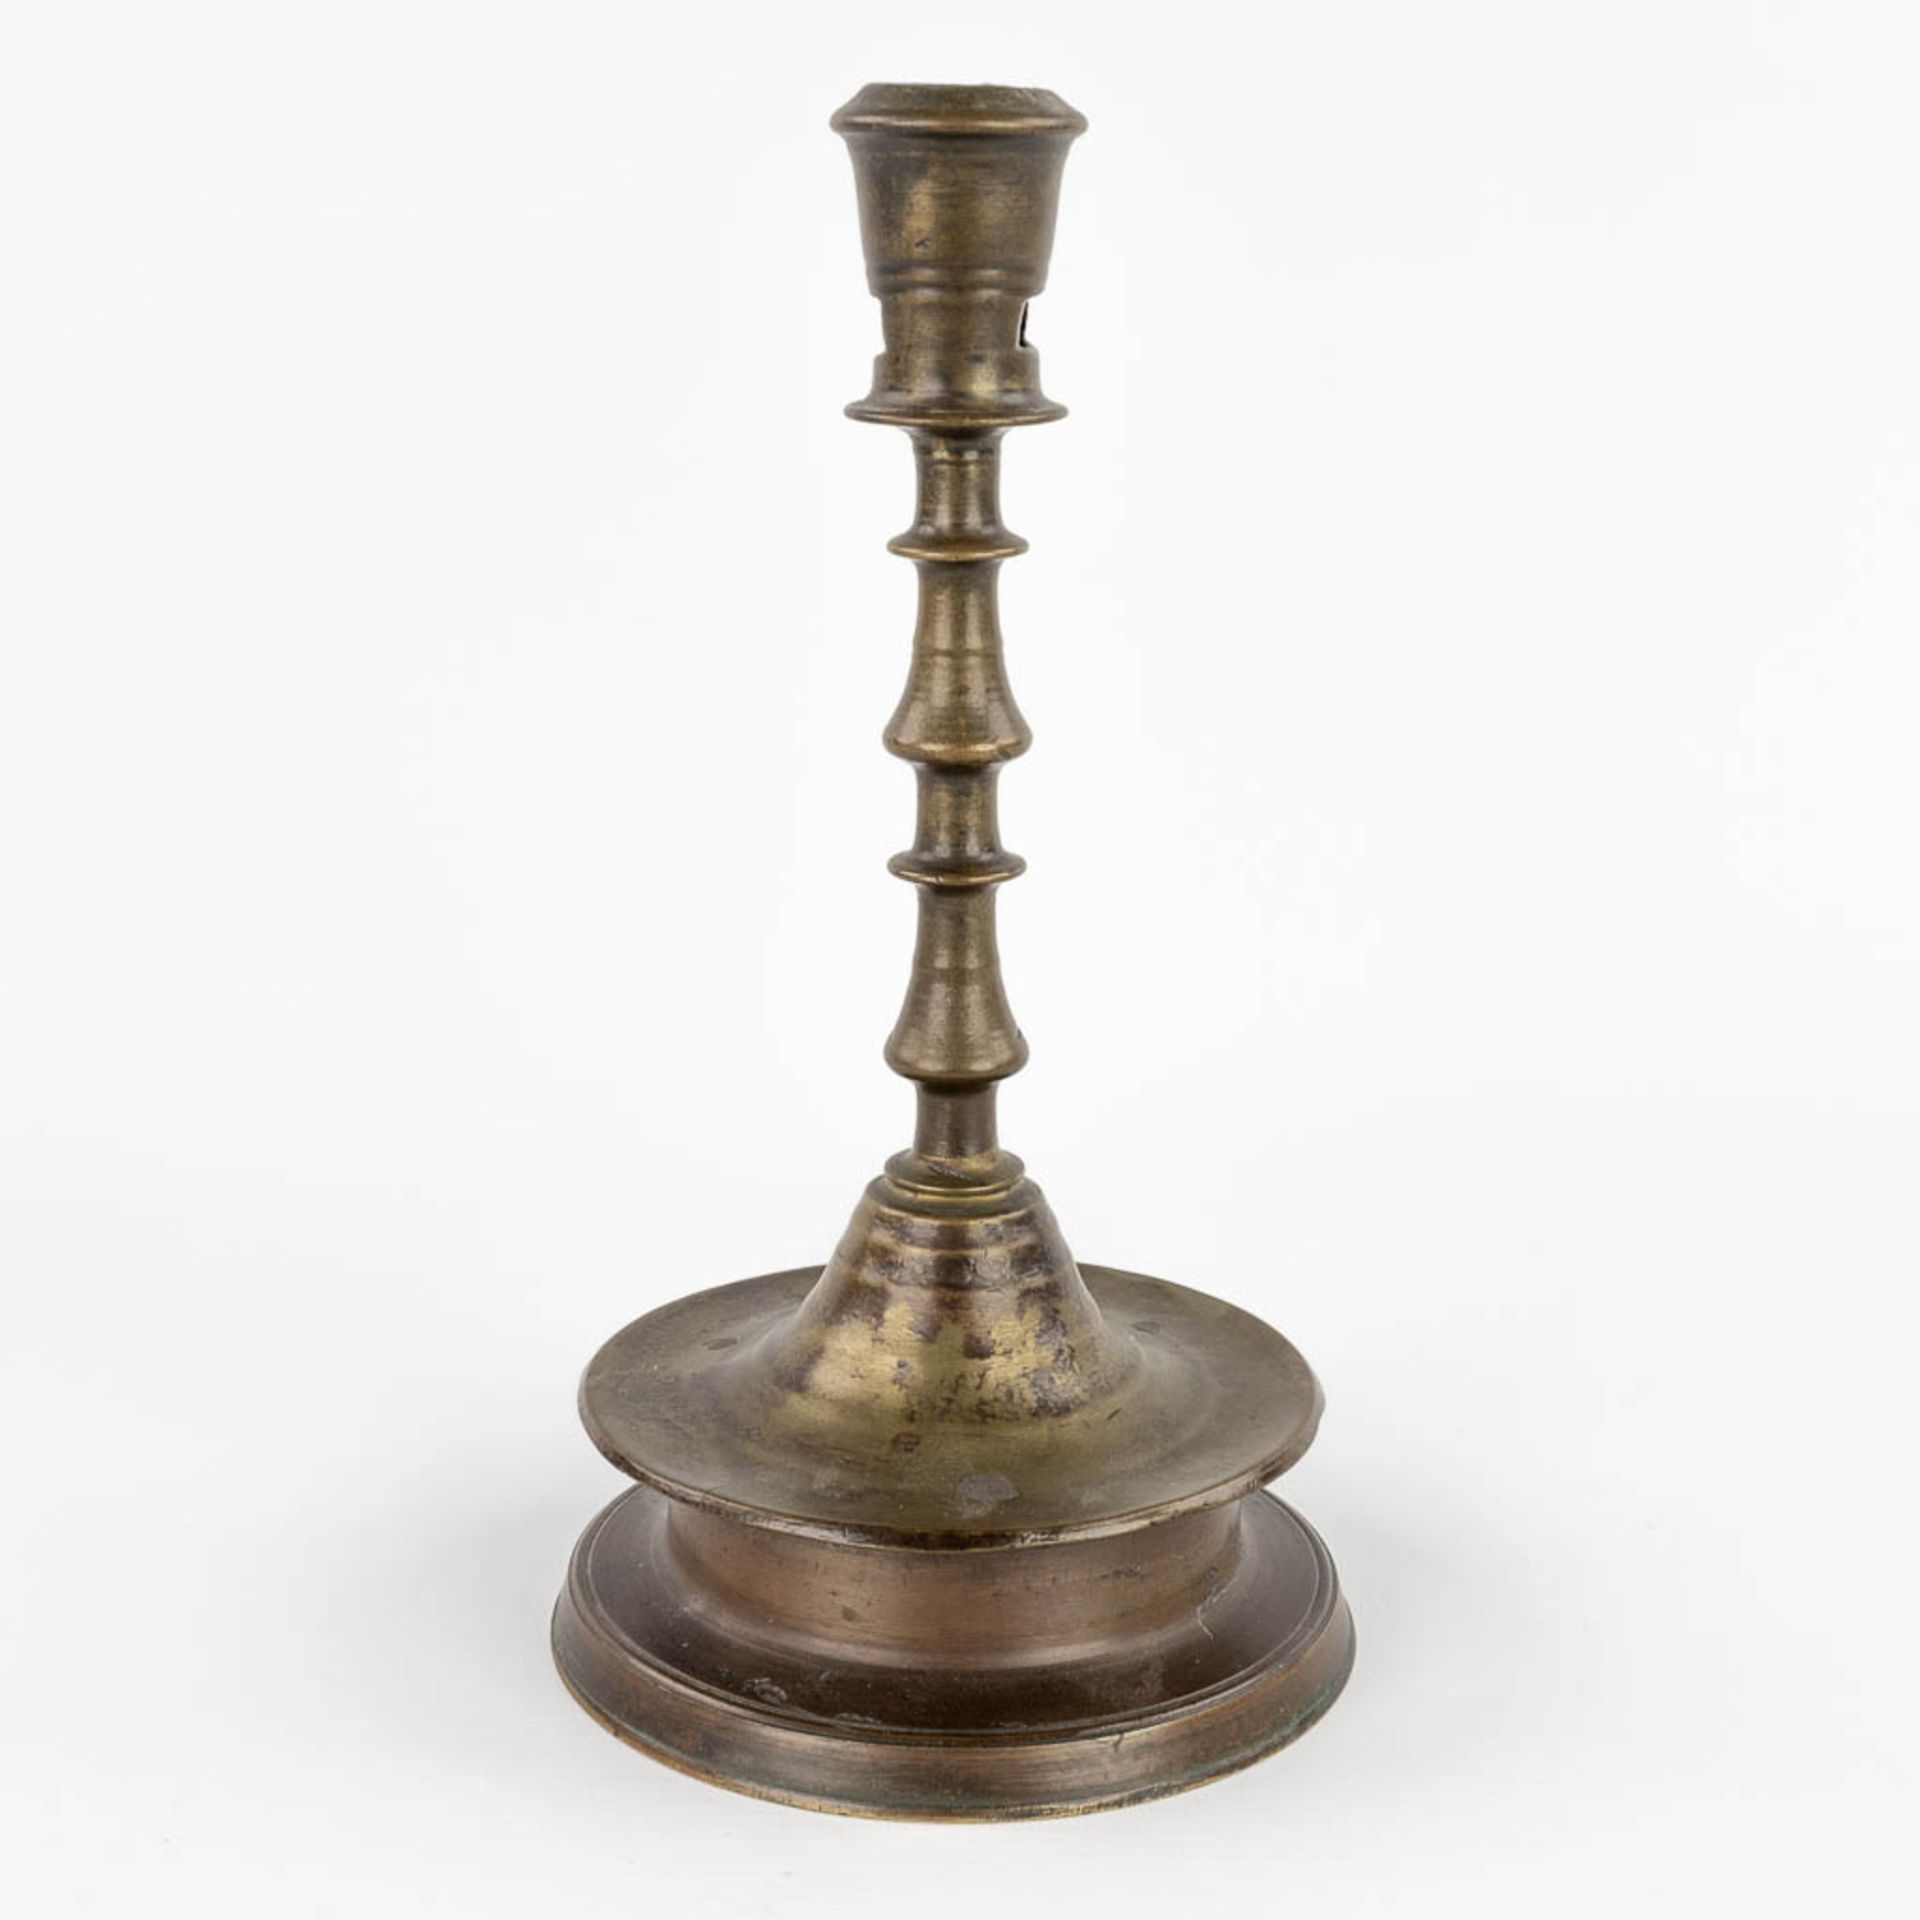 An antique Flemish or Dutch Button candlestick, bronze, 17th C (H:25 x D:13,3 cm)